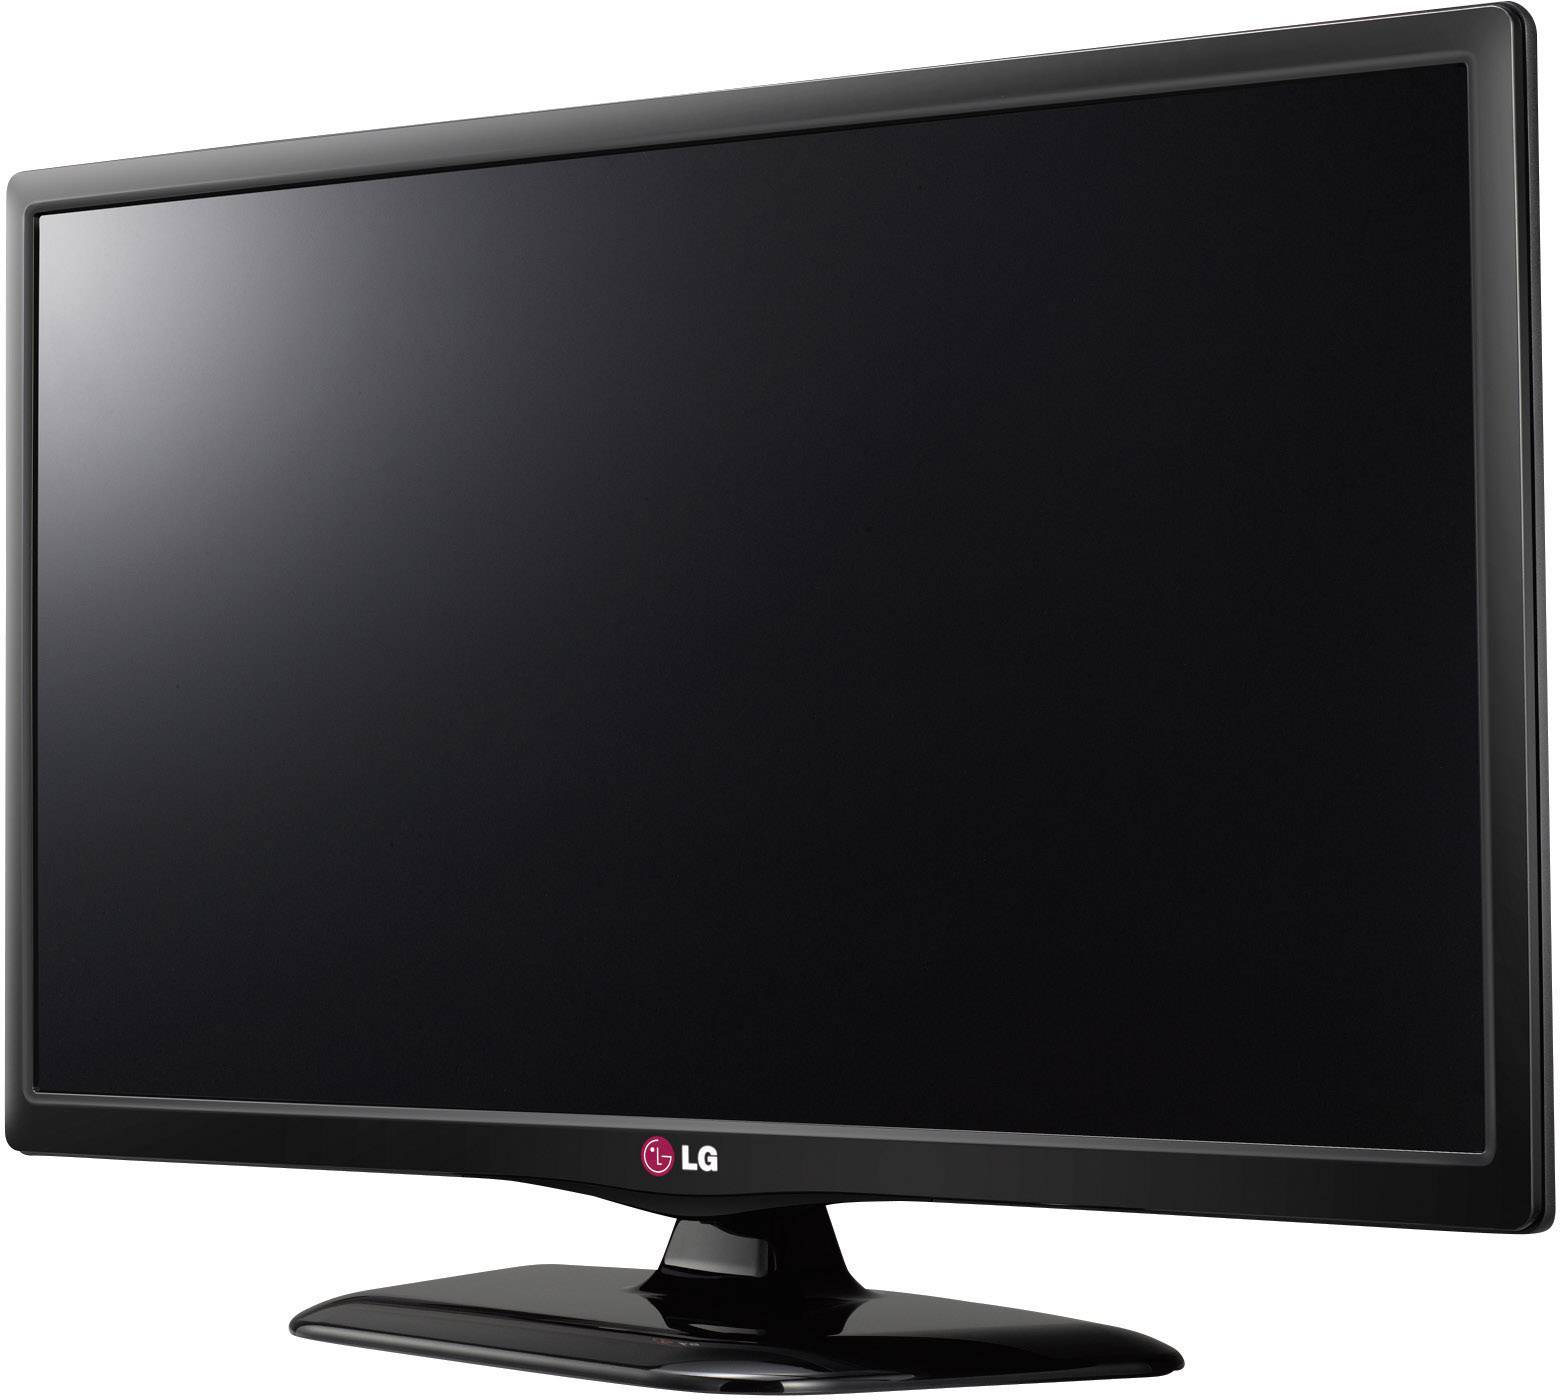 Телевизор lg l. LG 28lb450u. Телевизор LG 28lb450u. Телевизор LG 28lb450u 28". Телевизор led 22 LG 22lf450u.